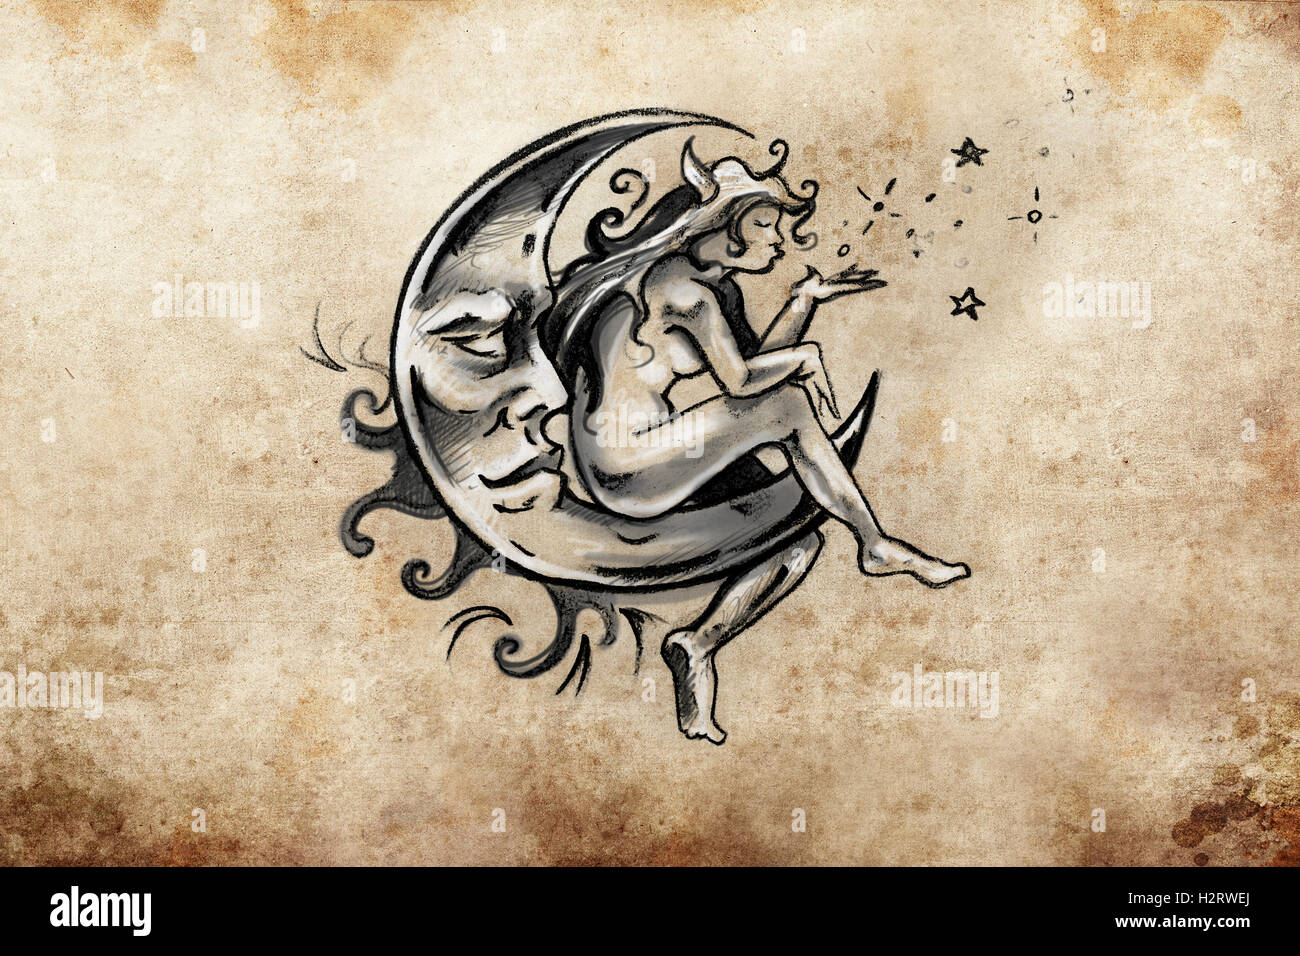 Fairy assis sur la lune, tatouage, croquis design artisanal sur v Banque D'Images